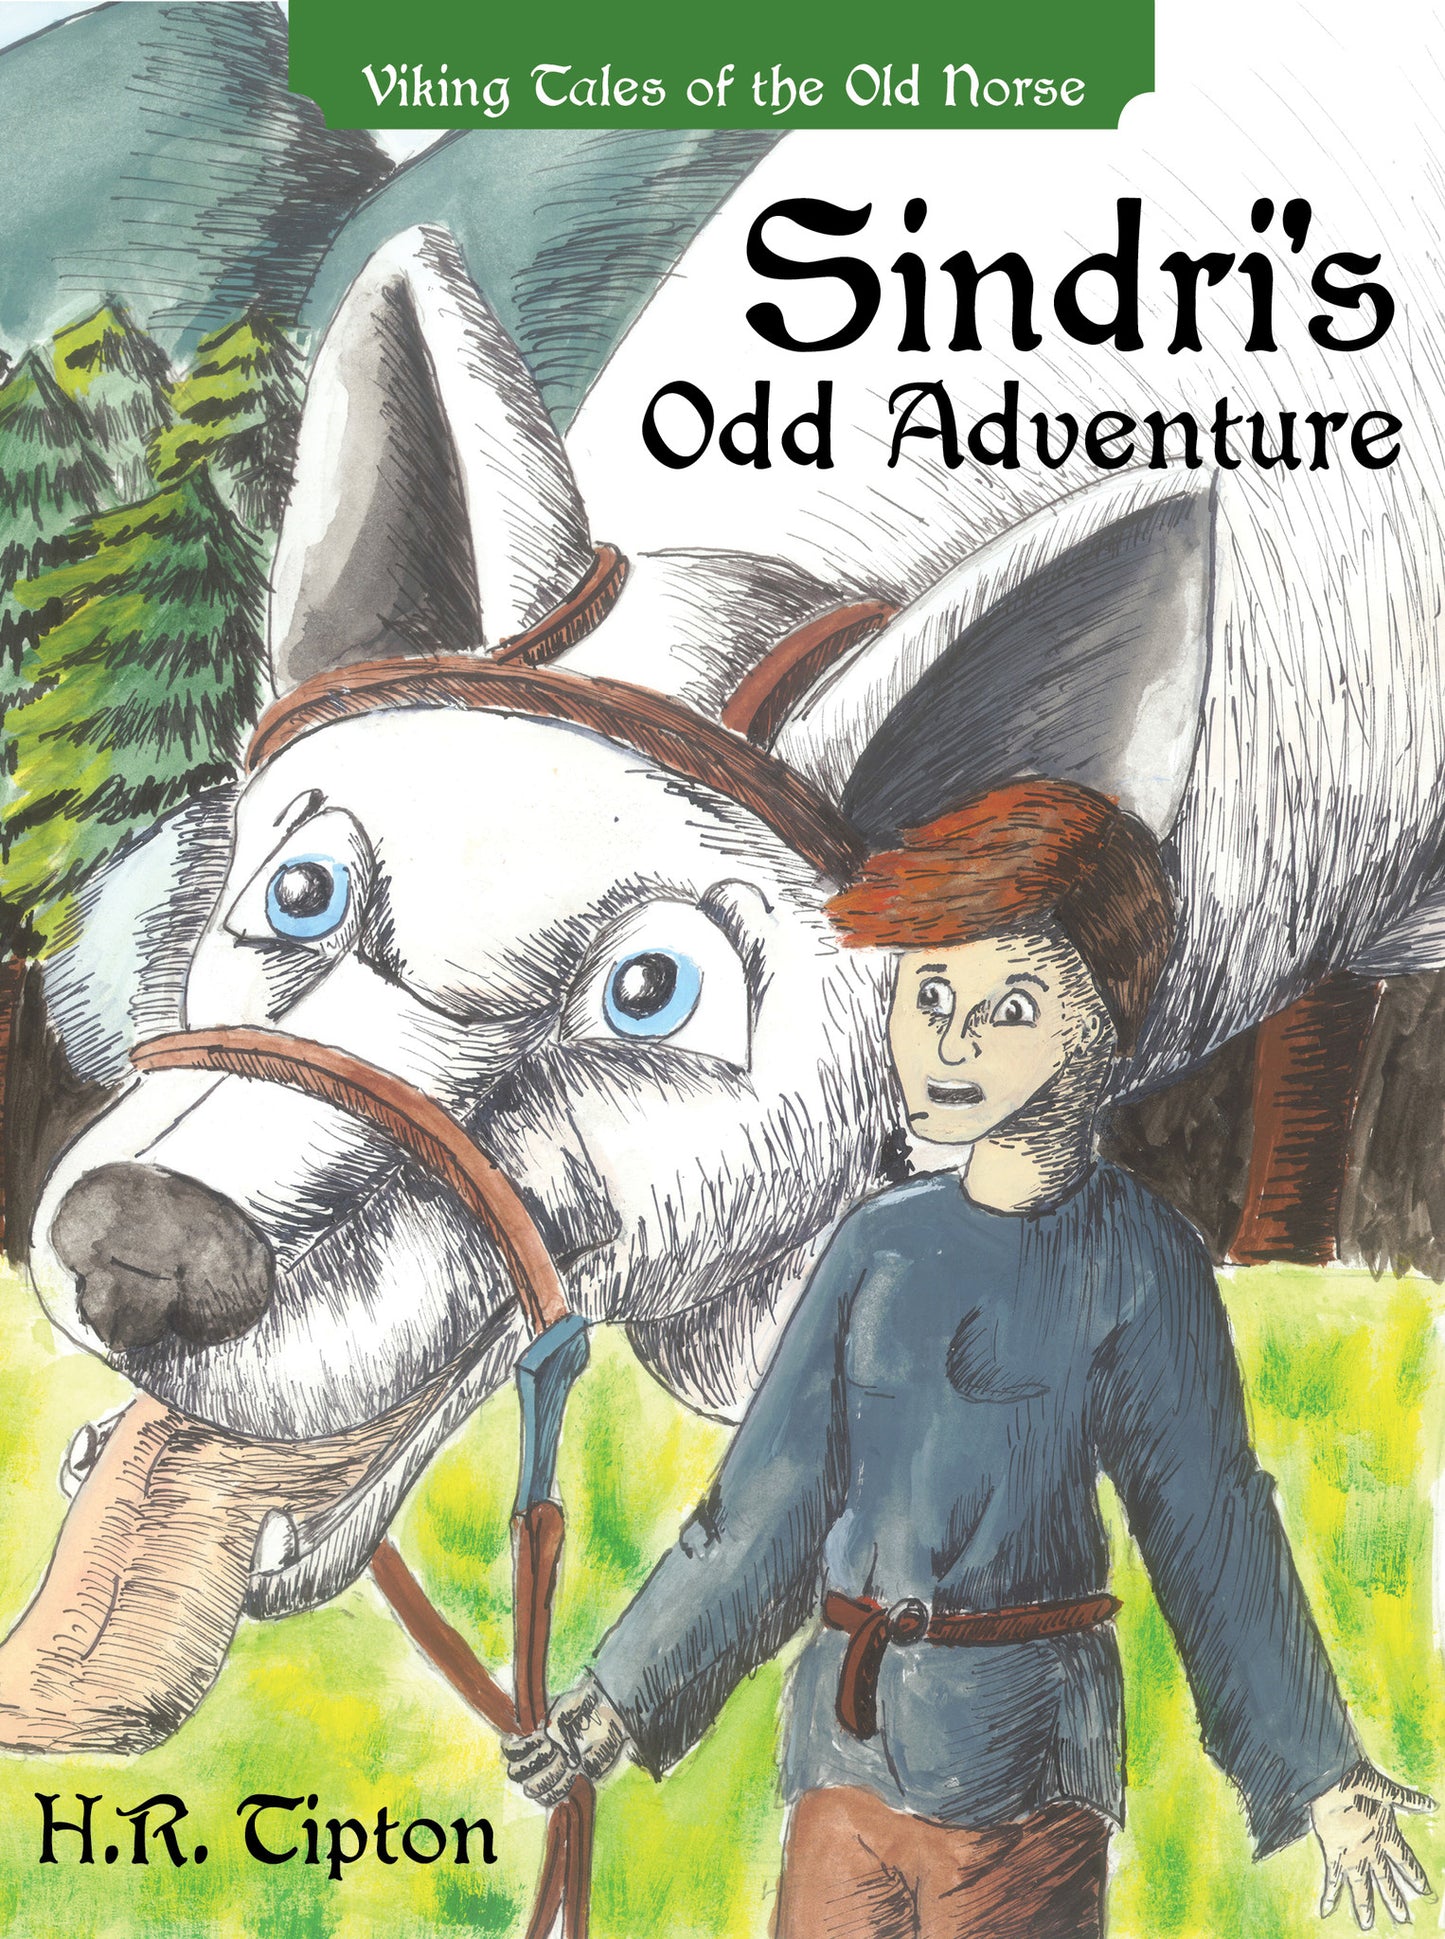 Sindri's Odd Adventure